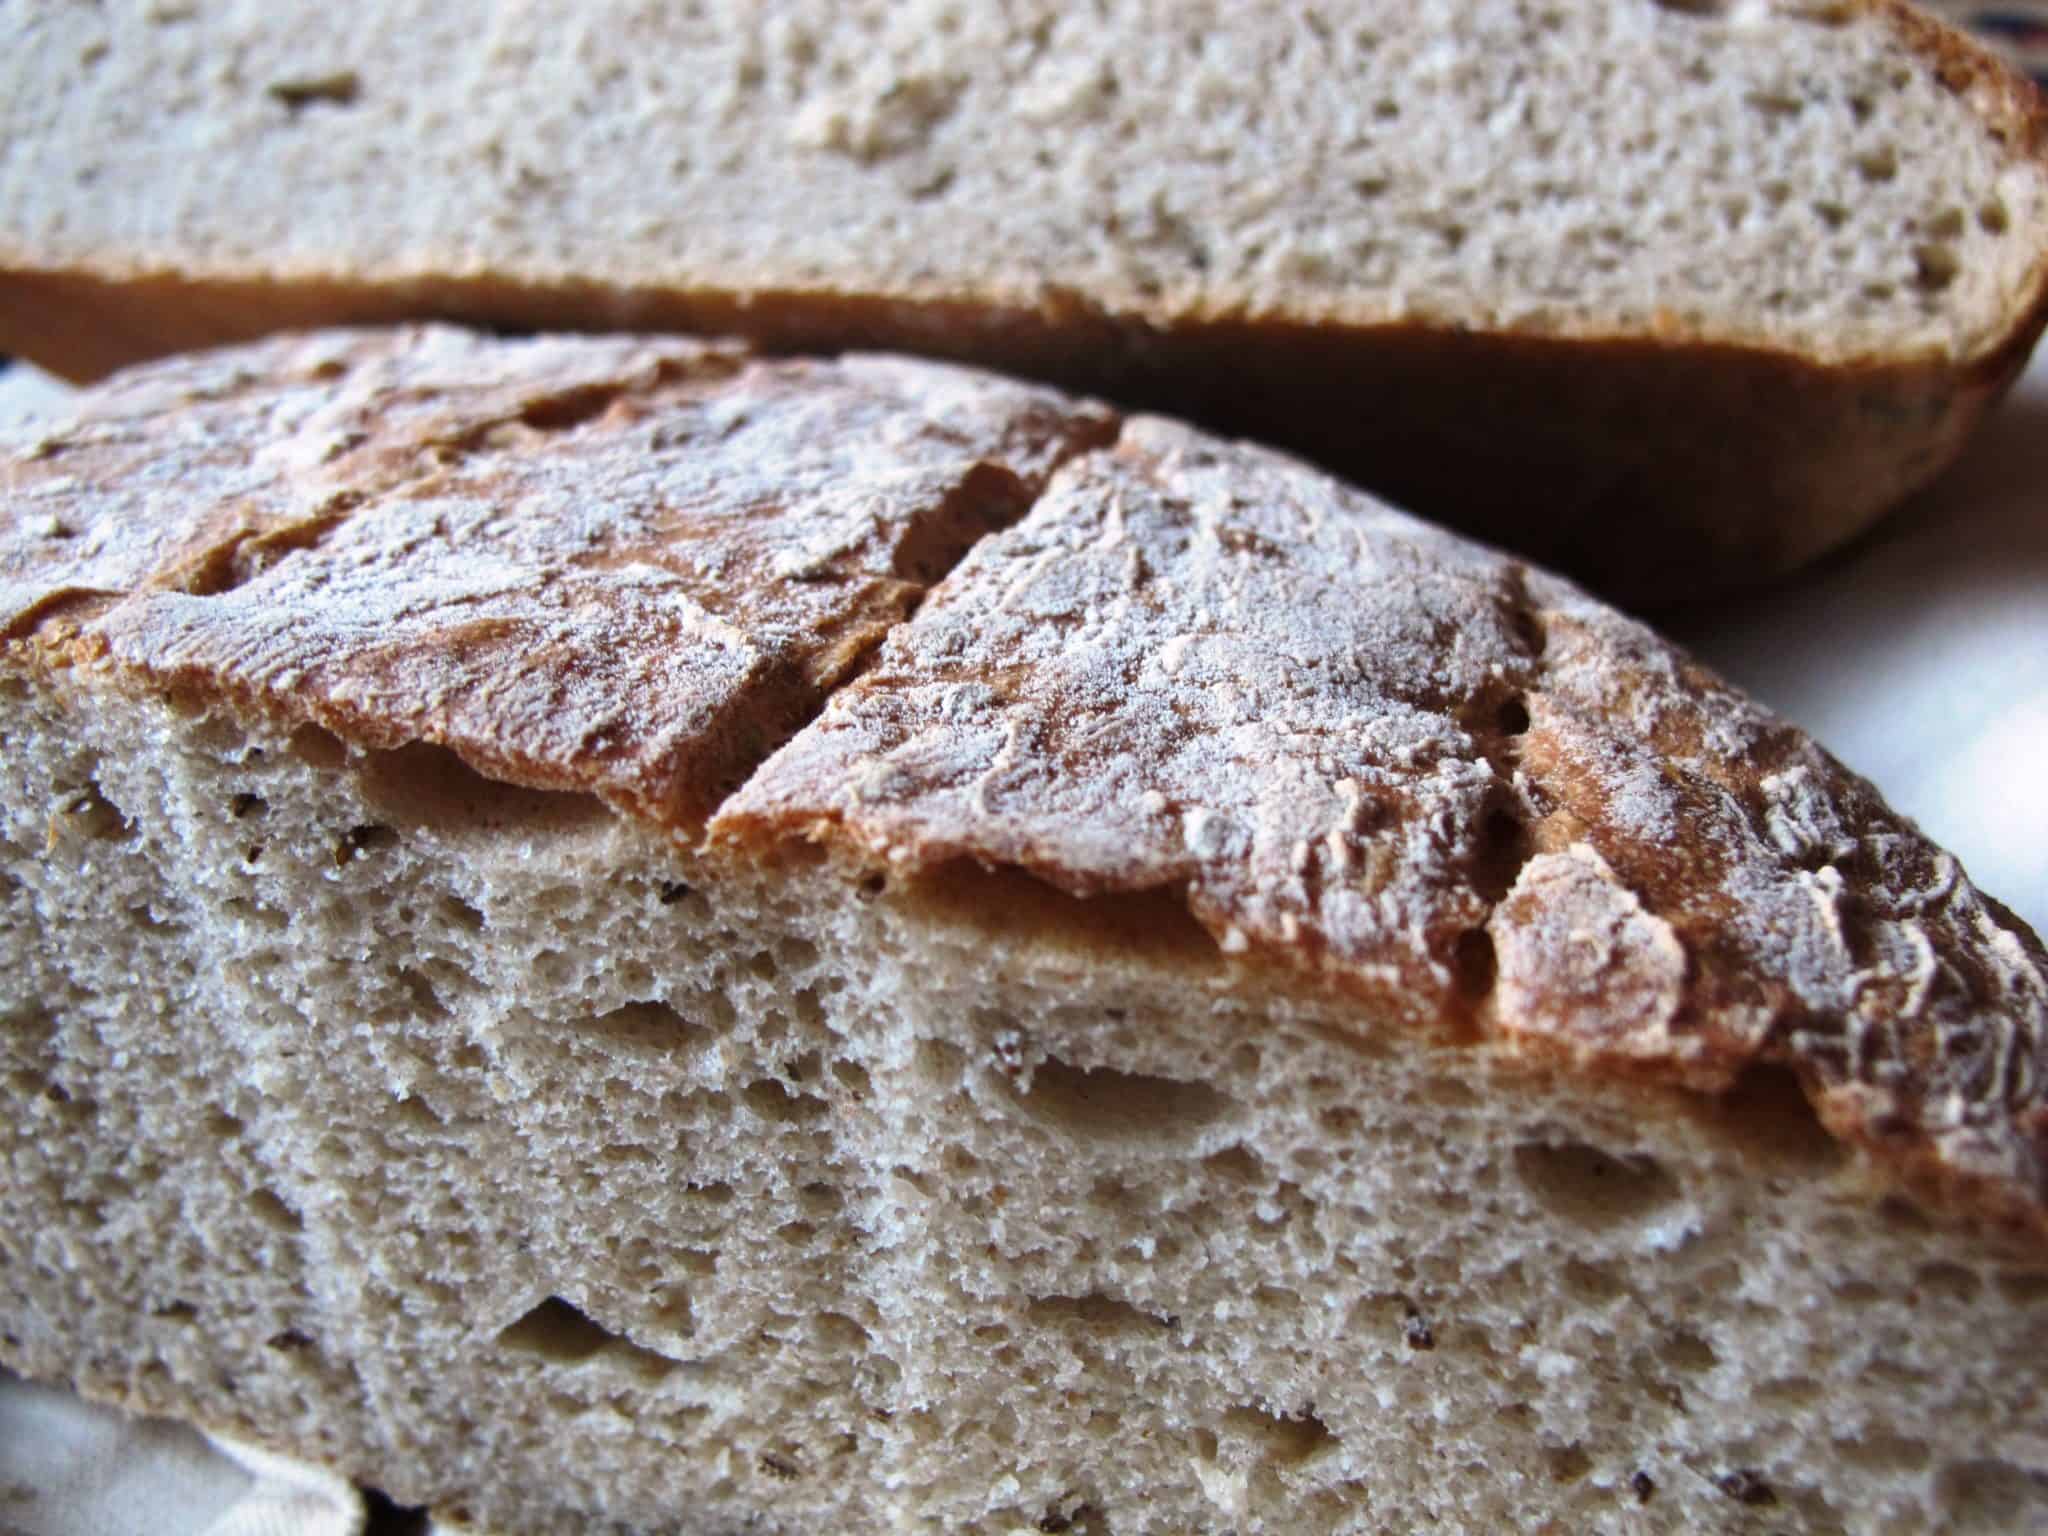 https://www.thebreadshebakes.com/wp-content/uploads/2013/11/Light-rye-bread.jpg